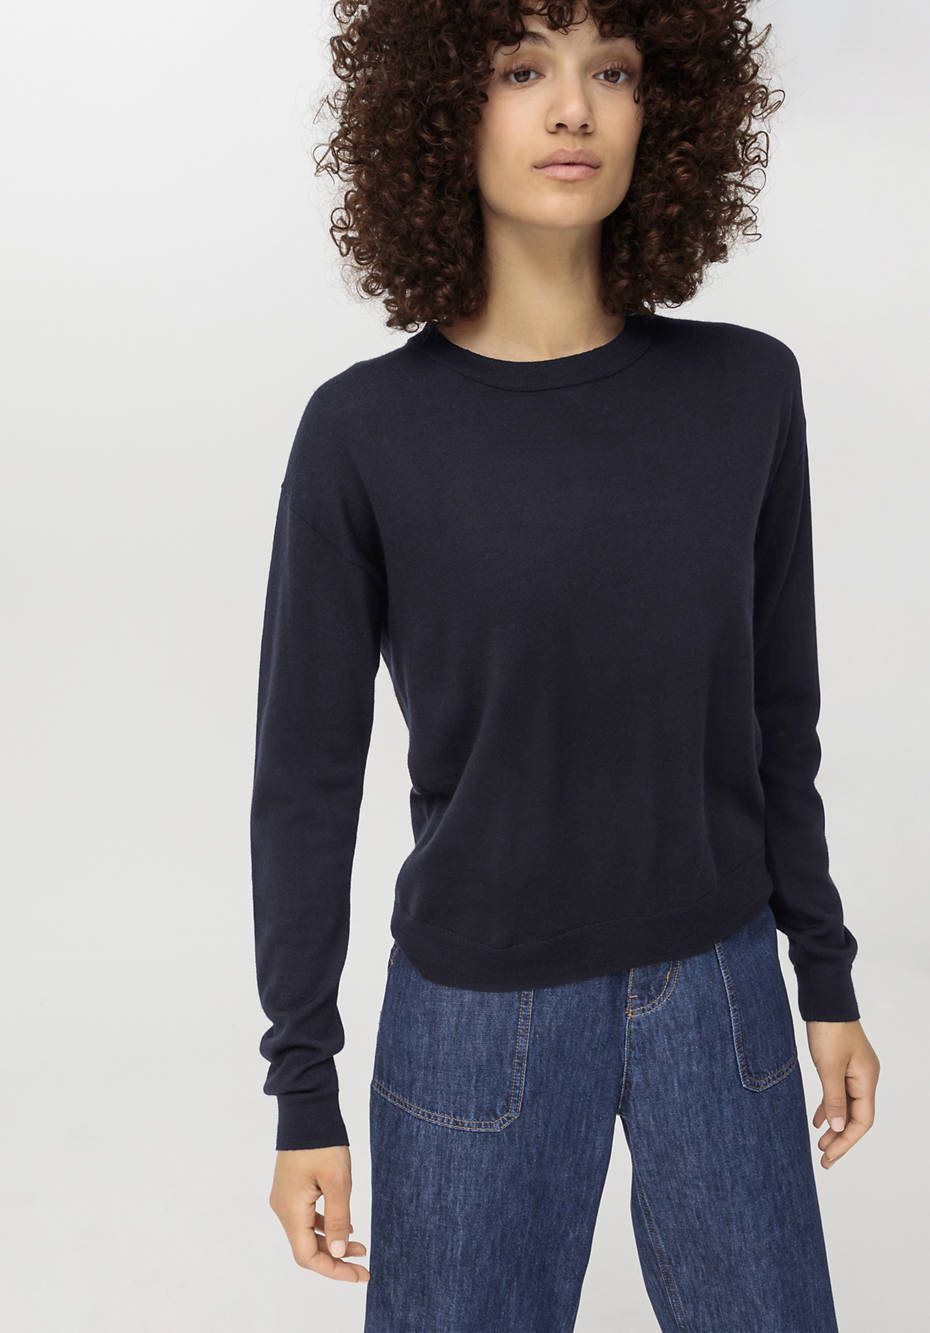 Round-neck sweater made from pure organic merino wool